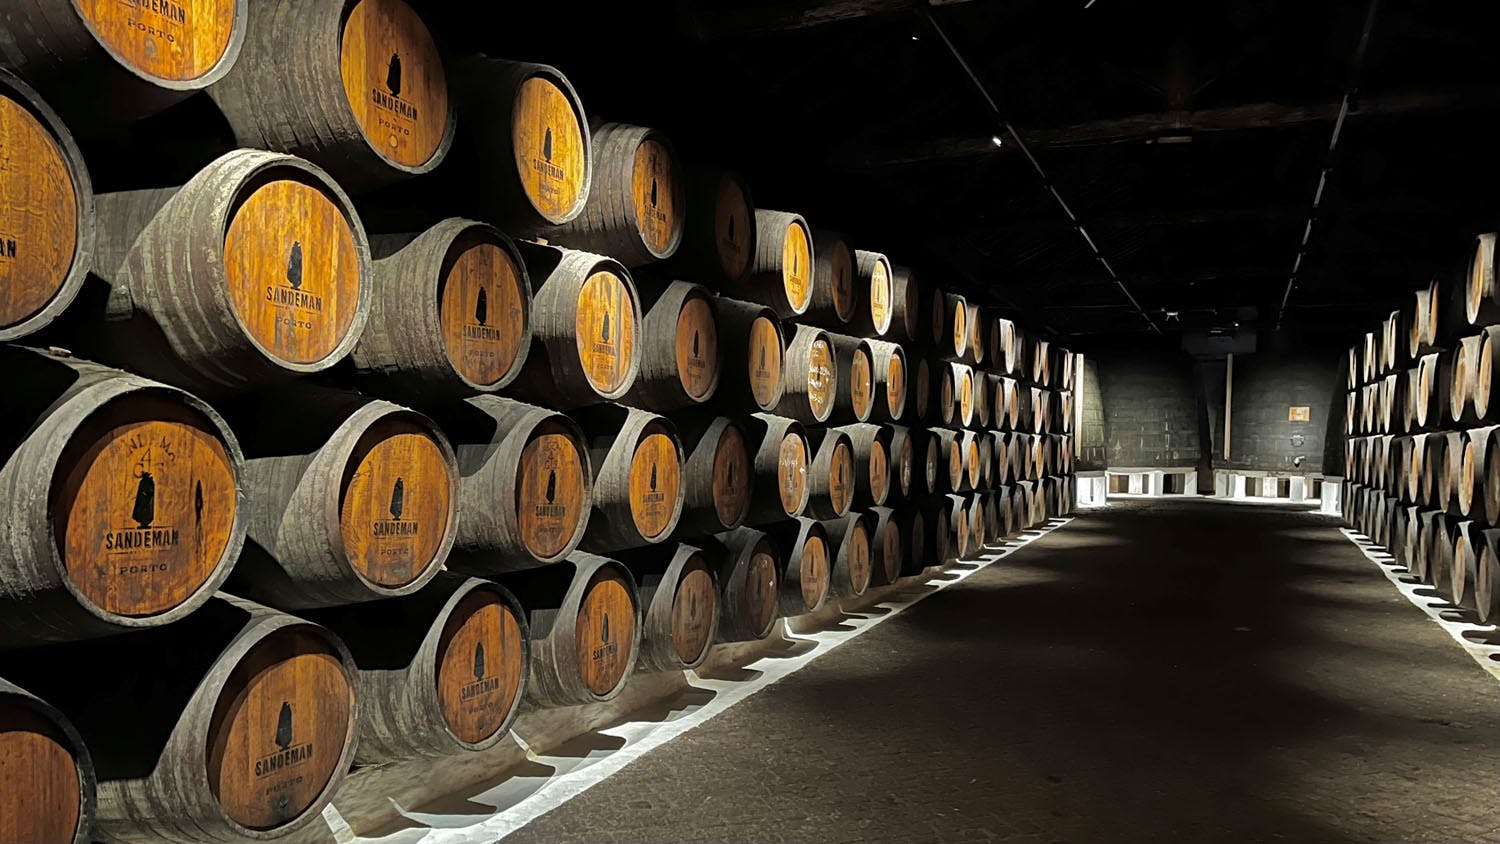 Porto - Historic Sandeman wine cellar